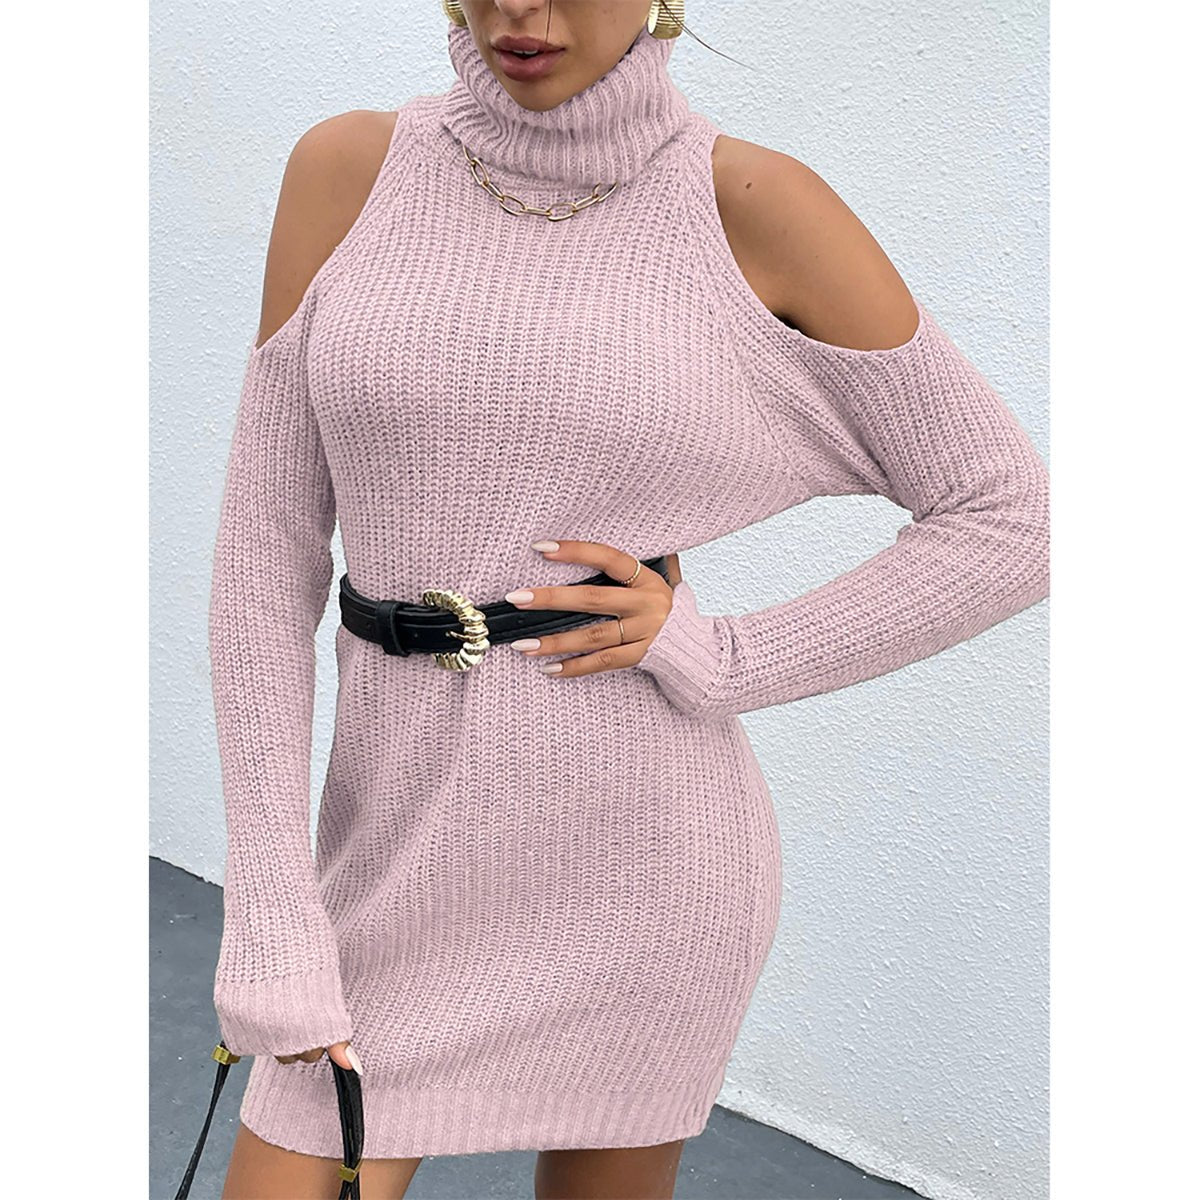 Cold Shoulder Turtleneck Sweater Dress - Admiresty